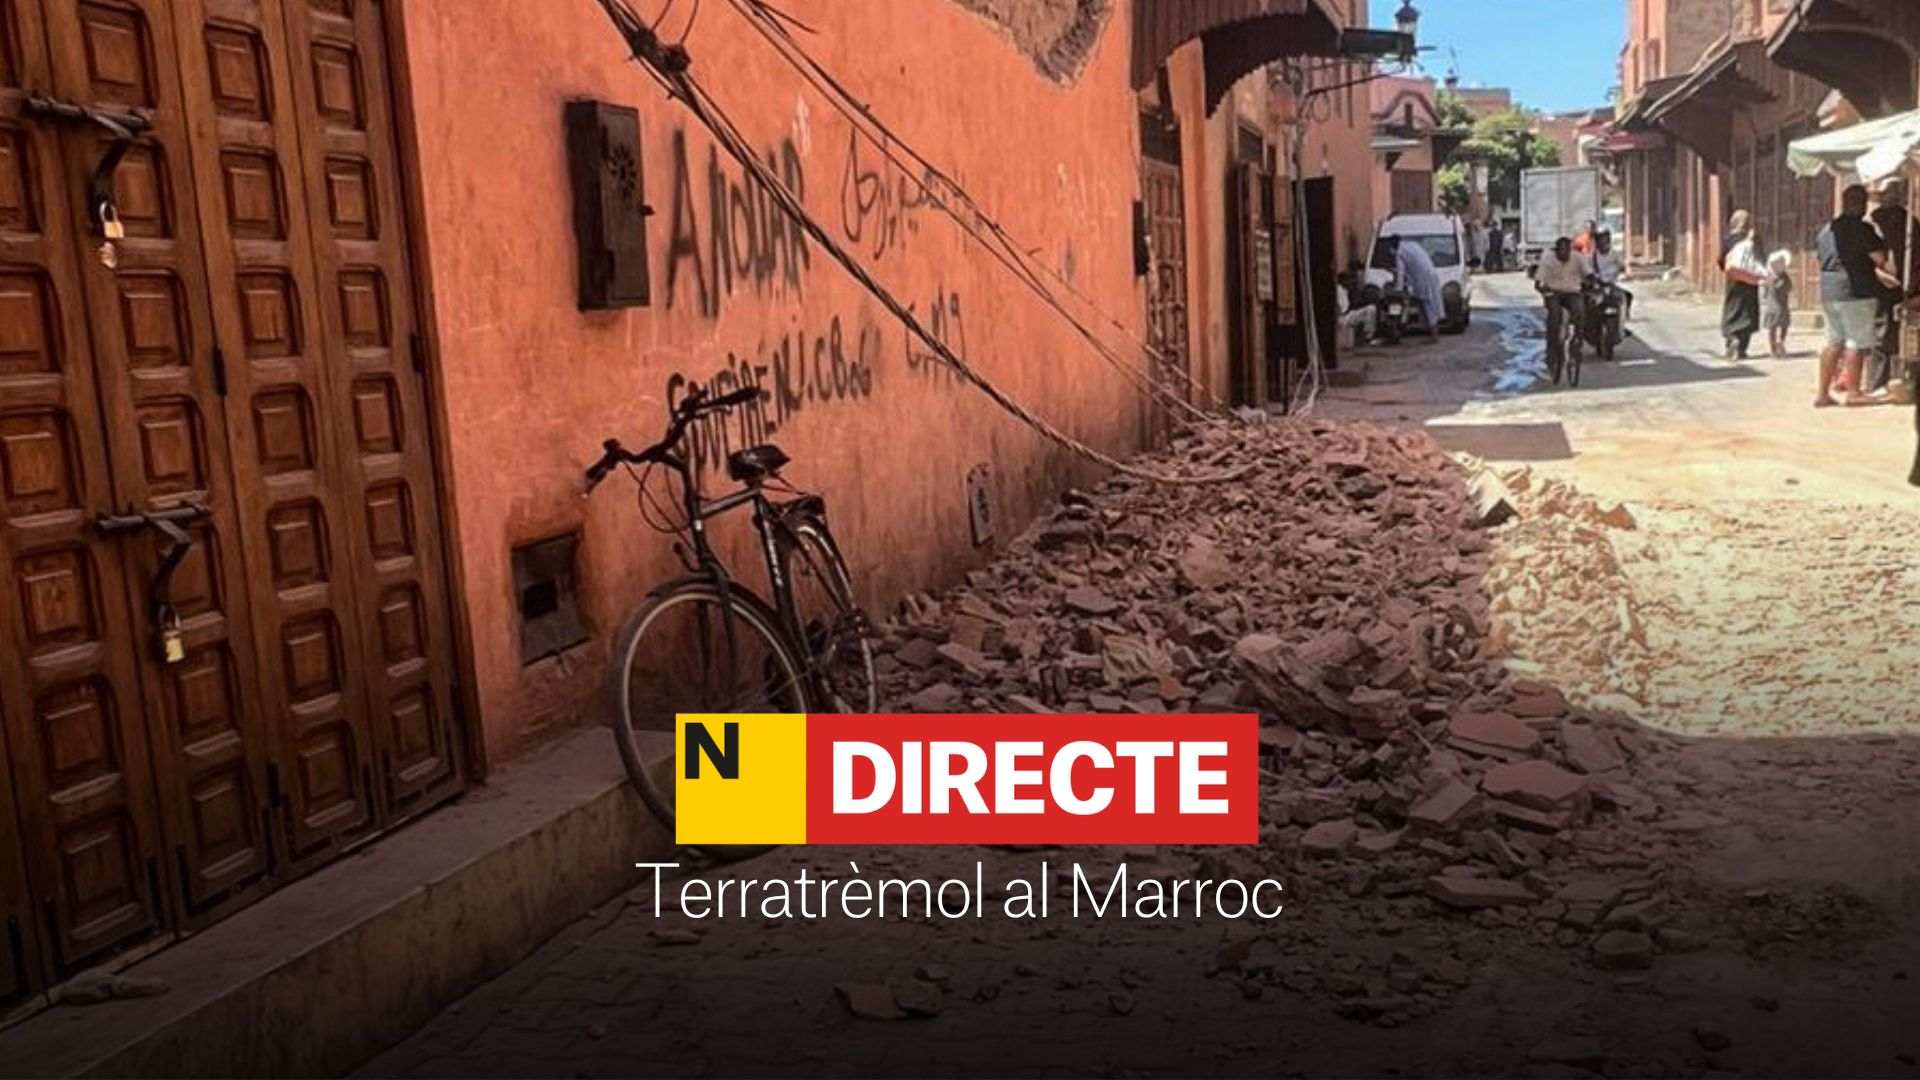 Terratrèmol al Marroc, DIRECTE | Notícies, mapa i última hora de la tragèdia a Marràqueix